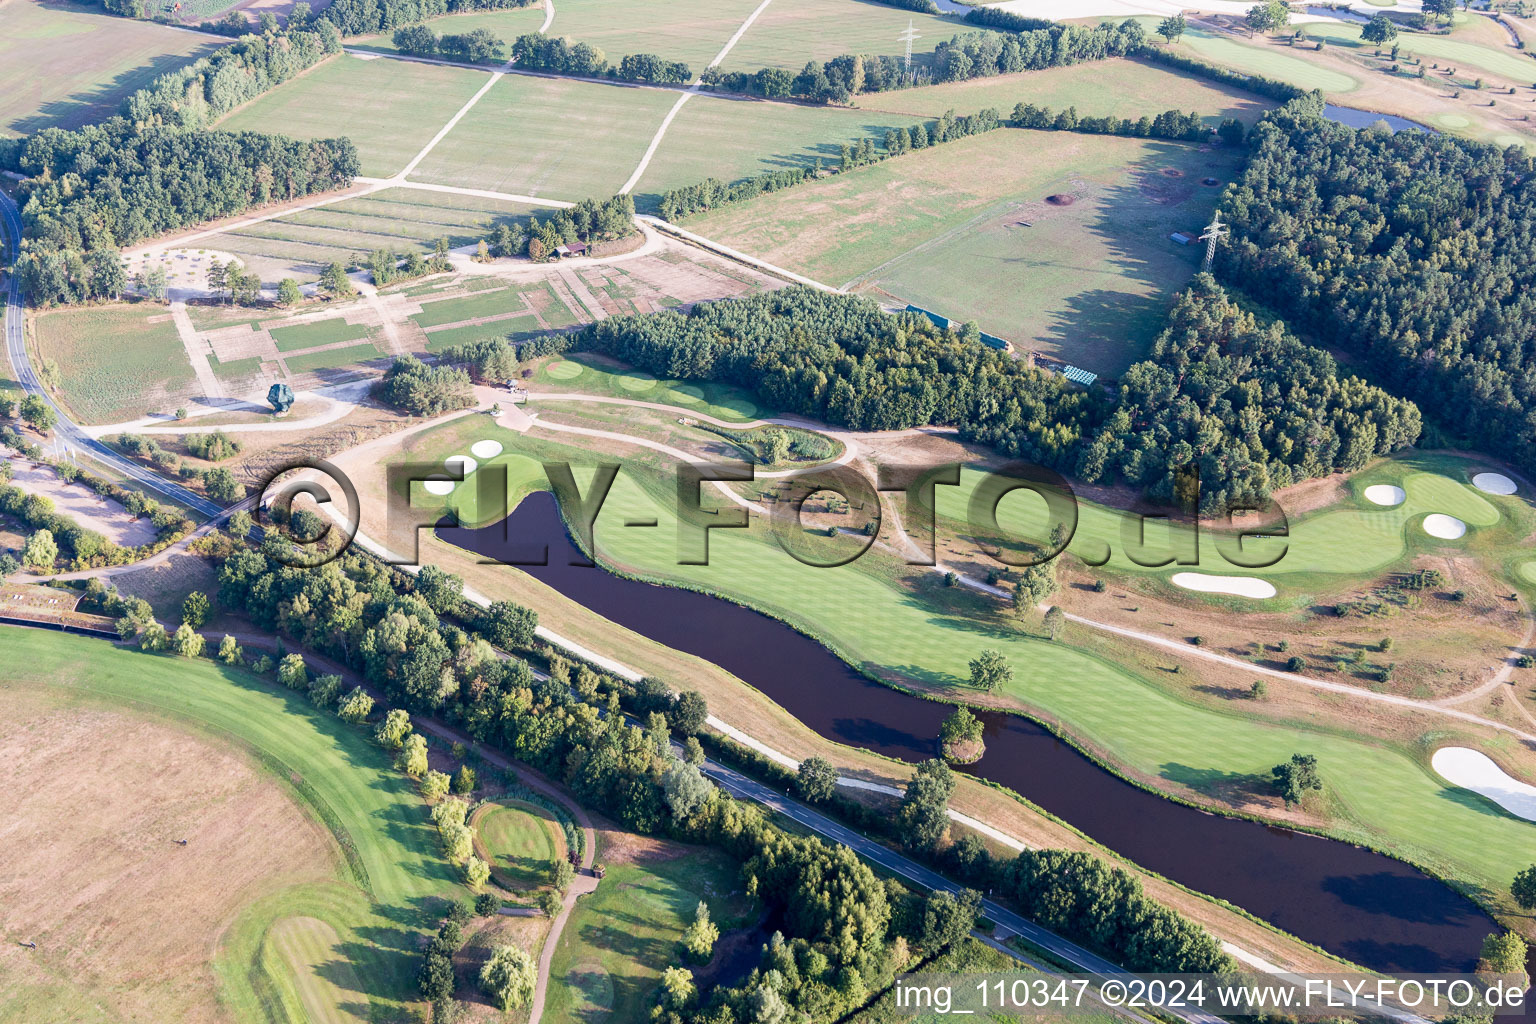 Schrägluftbild von Gelände des Golfplatz Green Eagle Golf Courses in Winsen (Luhe) im Bundesland Niedersachsen, Deutschland